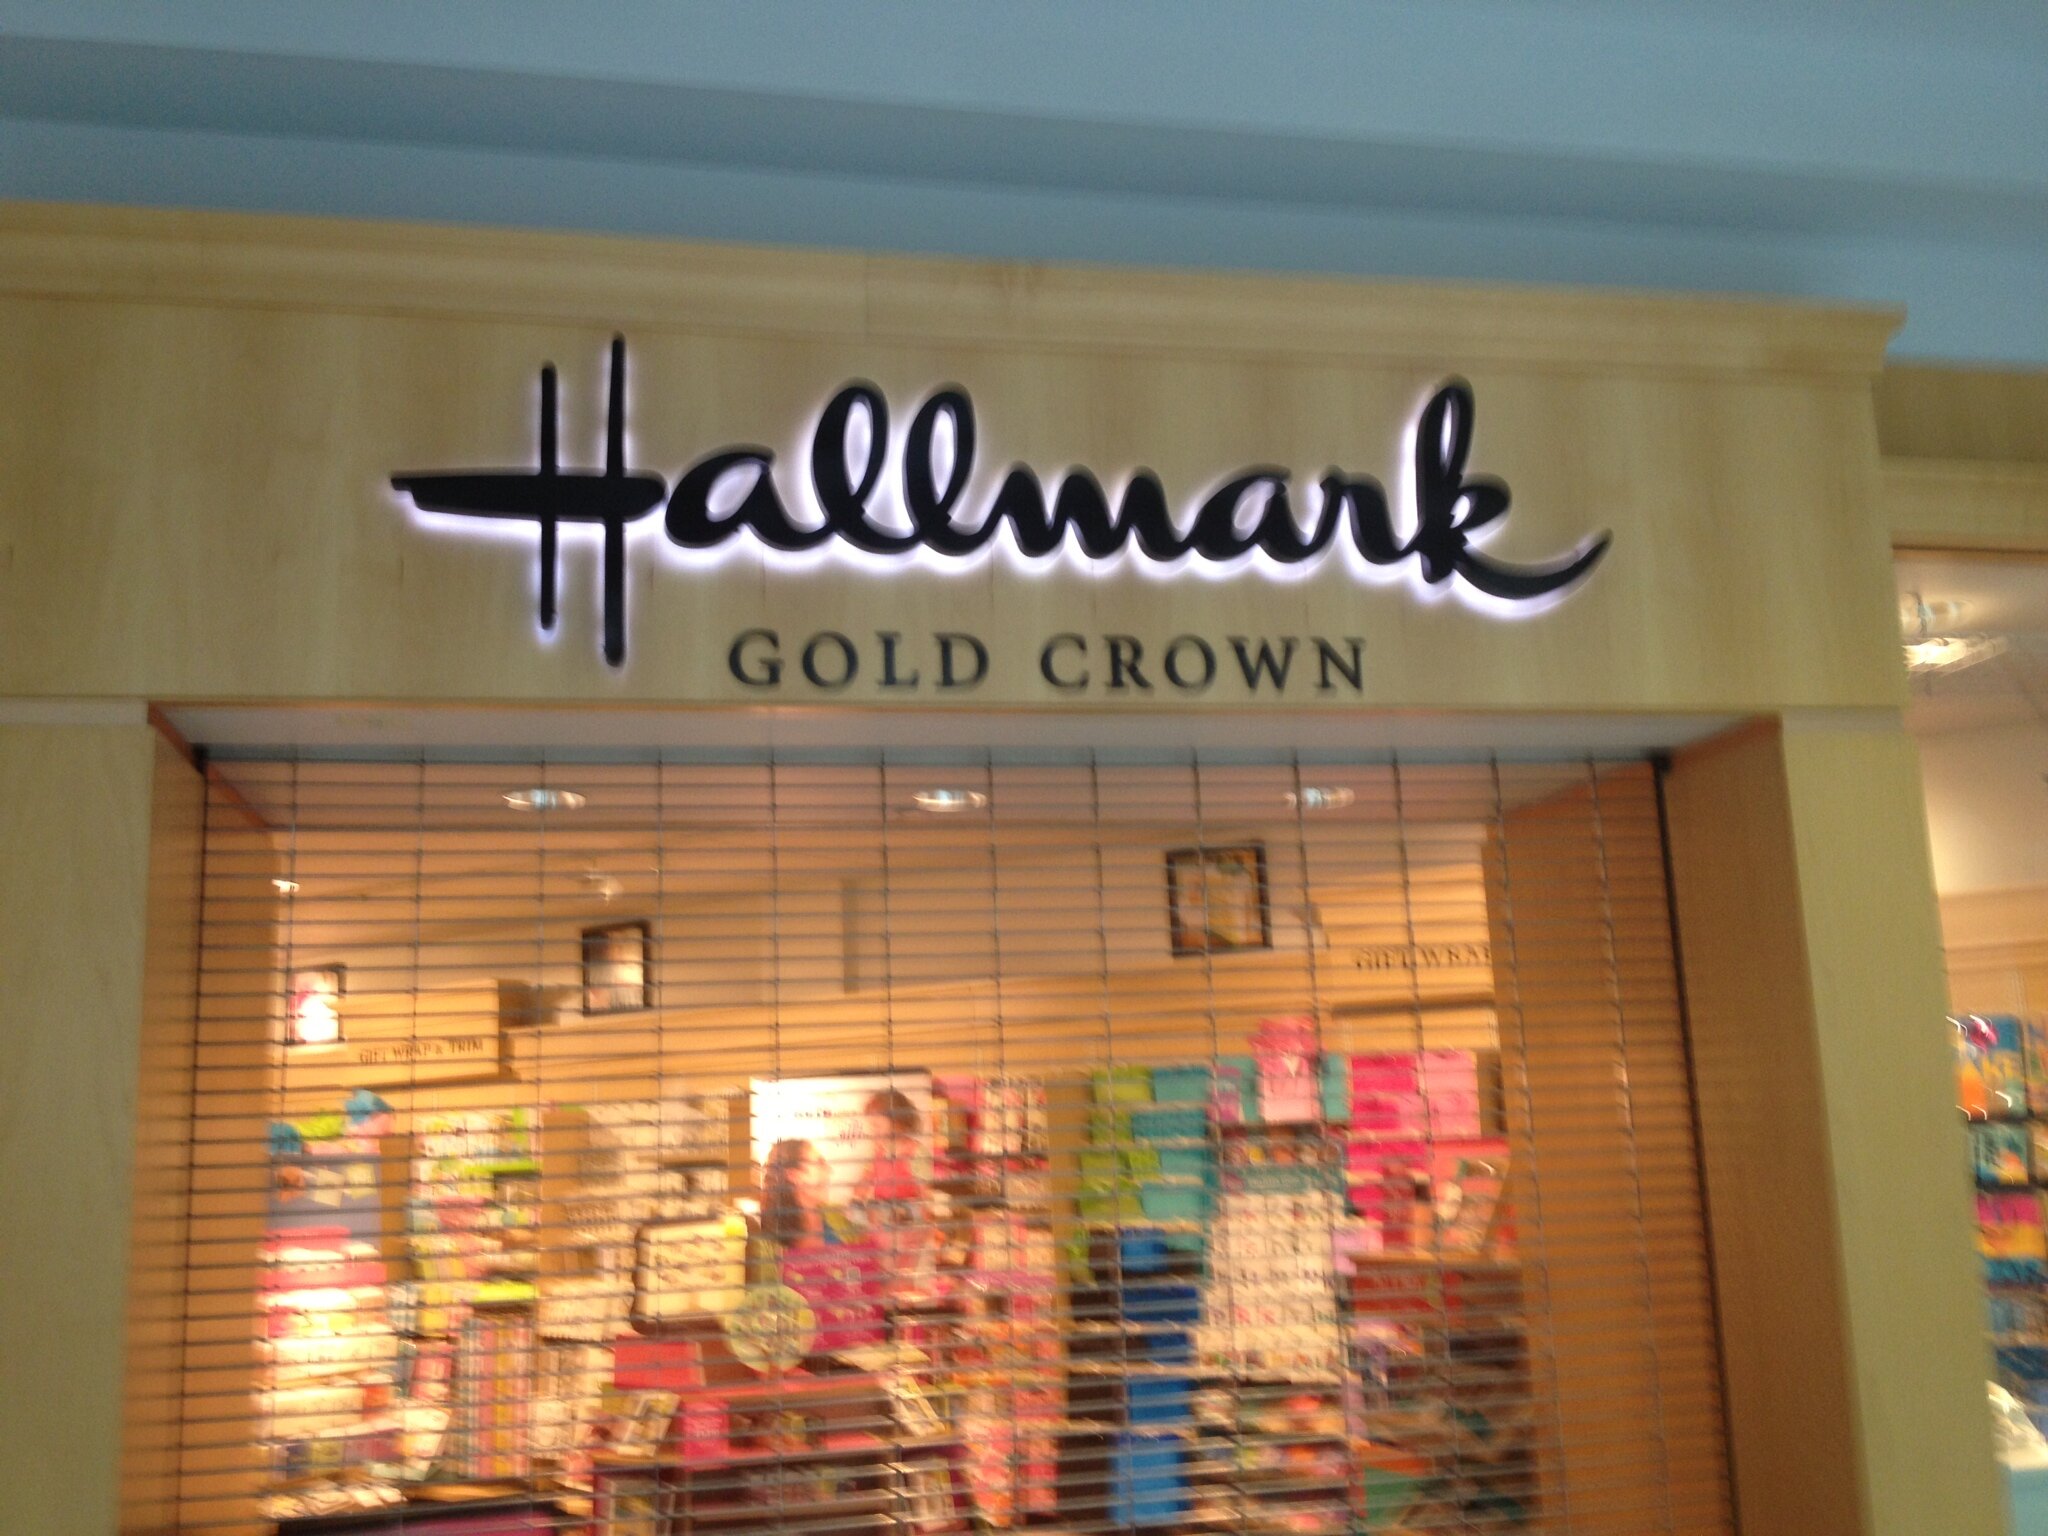 Hallmark Storefront Before